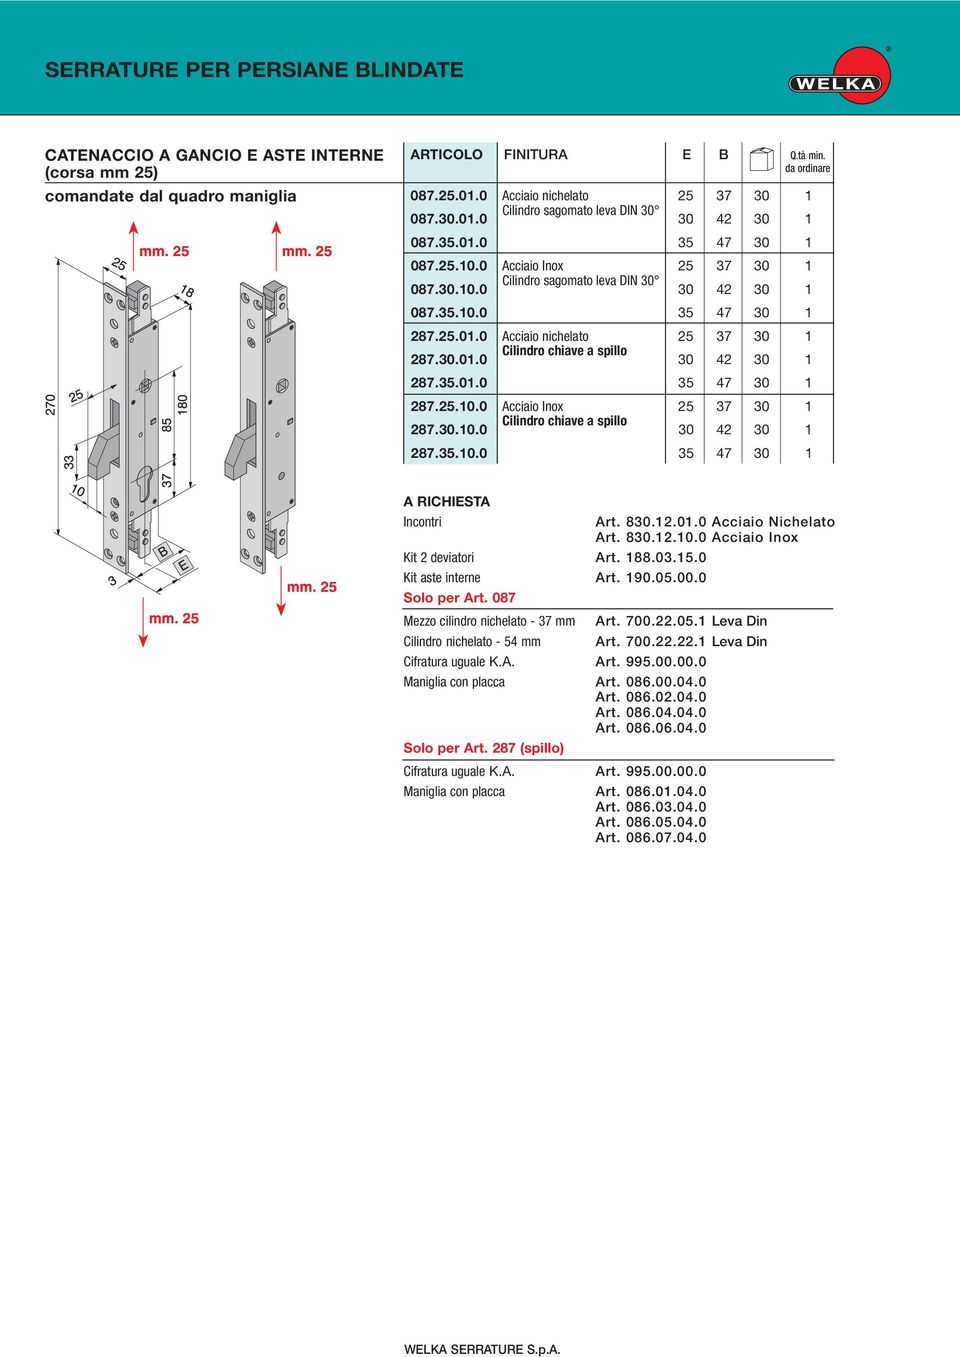 830.12.10.0 Acciaio Inox Kit 2 deviatori Art. 188.03.15.0 Kit aste interne Art. 190.05.00.0 Solo per Art. 087 Mezzo cilindro nichelato - 37 mm Art. 700.22.05.1 Leva Din Cilindro nichelato - 54 mm Art.